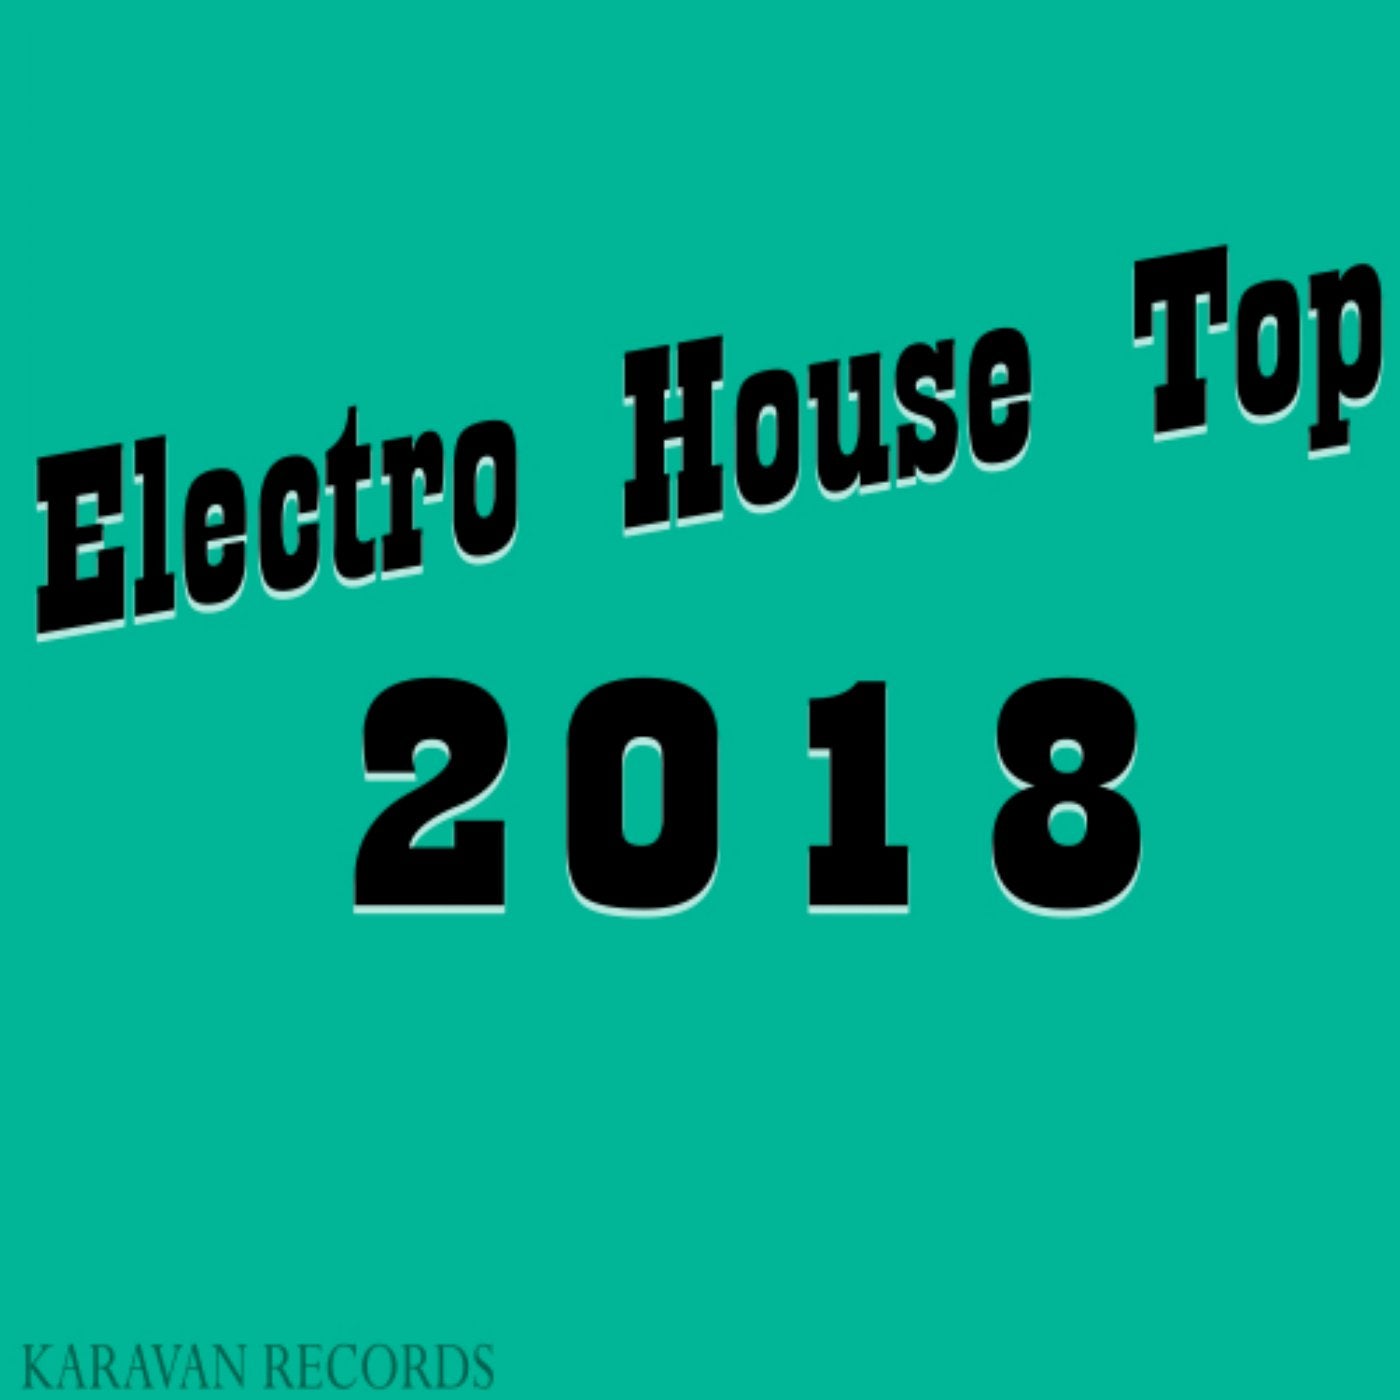 Electro House Top 2018